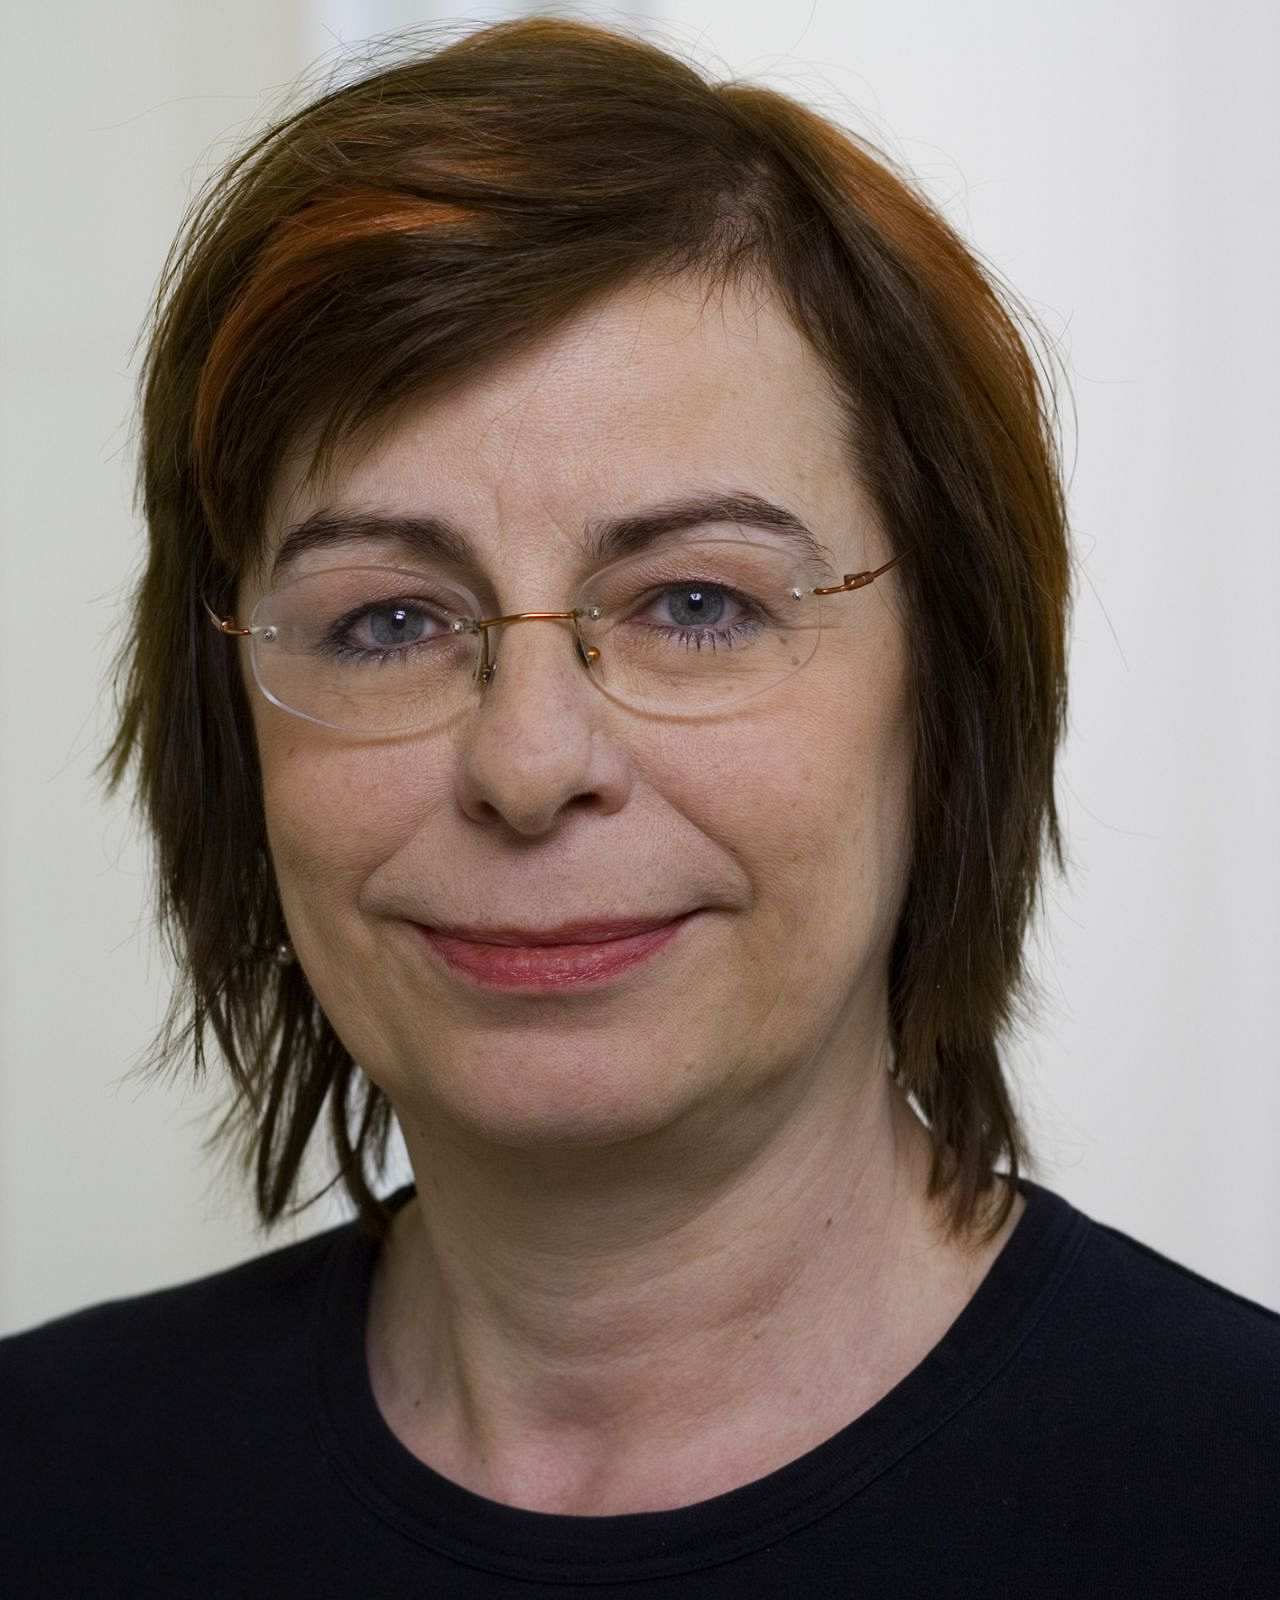 Porträtfoto von Marion Seelig, 2006, Stellvertretende Vorsitzende der Fraktion DIE LINKE im Abgeordnetenhaus Berlin.